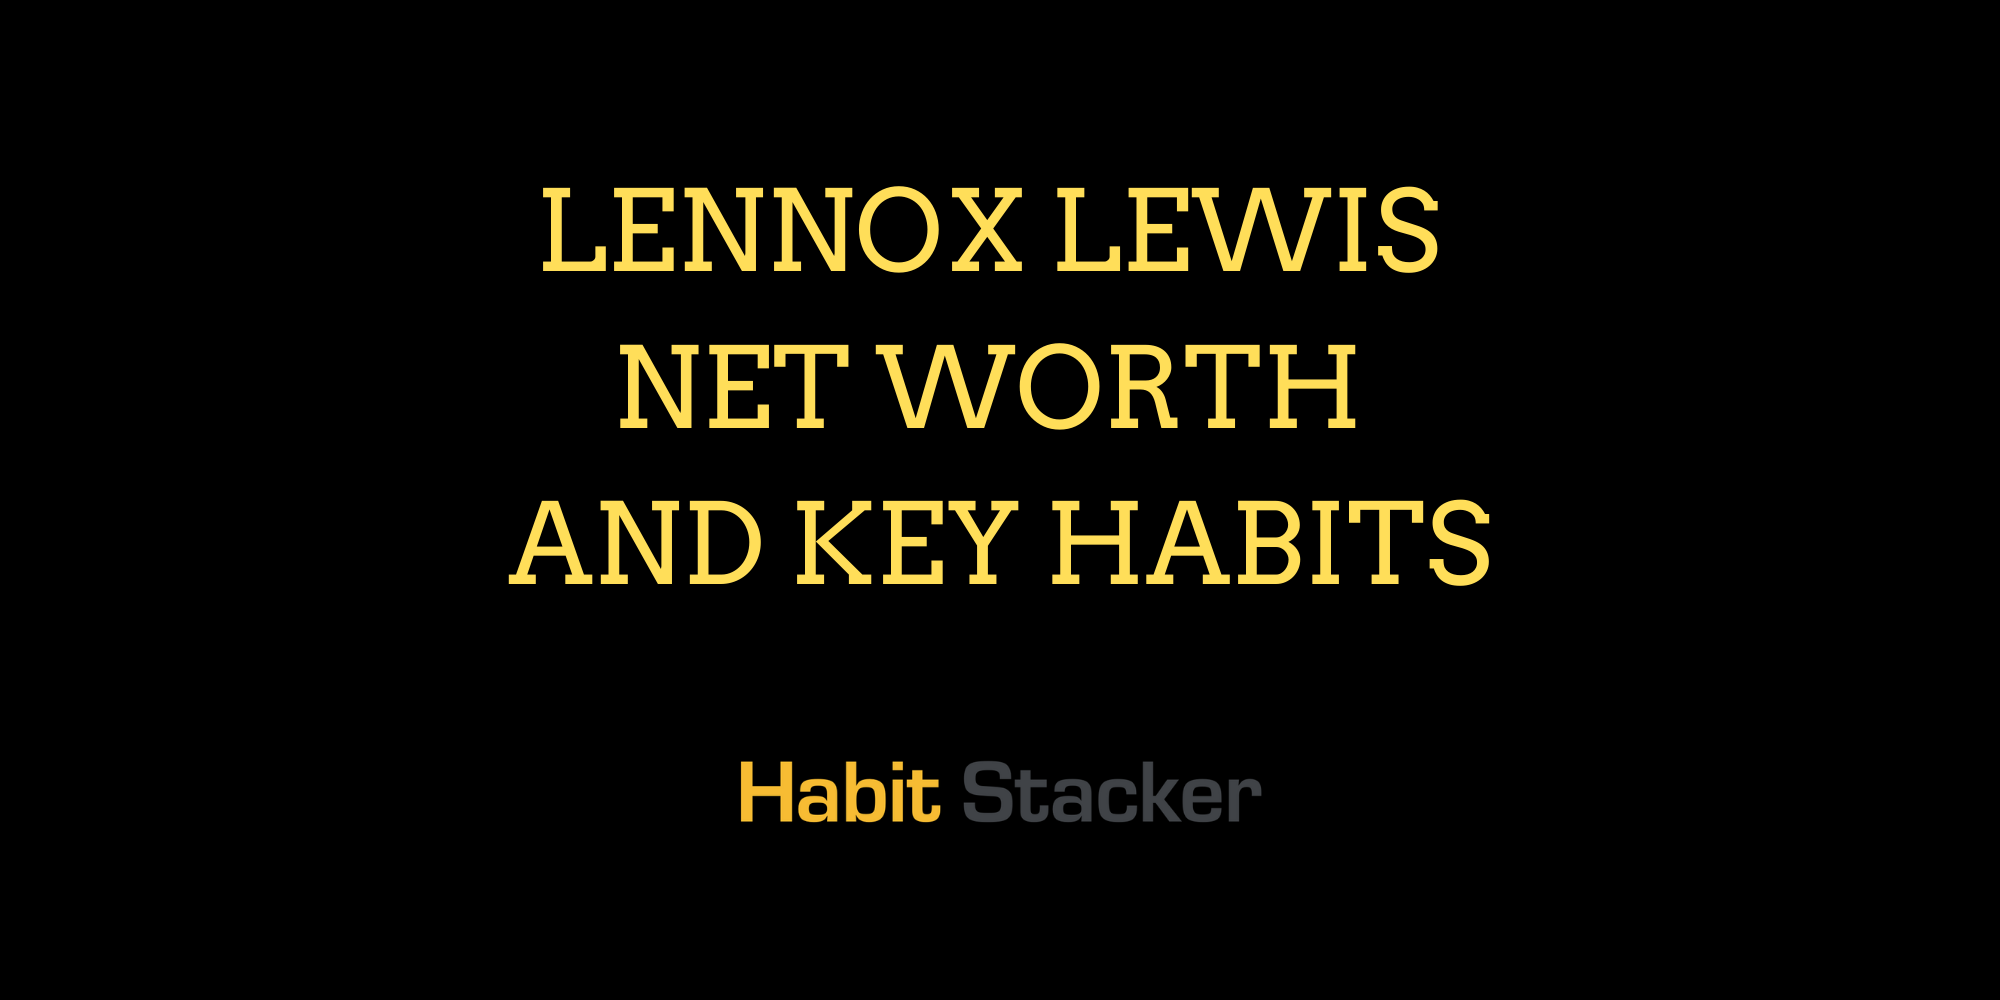 Lennox Lewis Net Worth and Key Habits